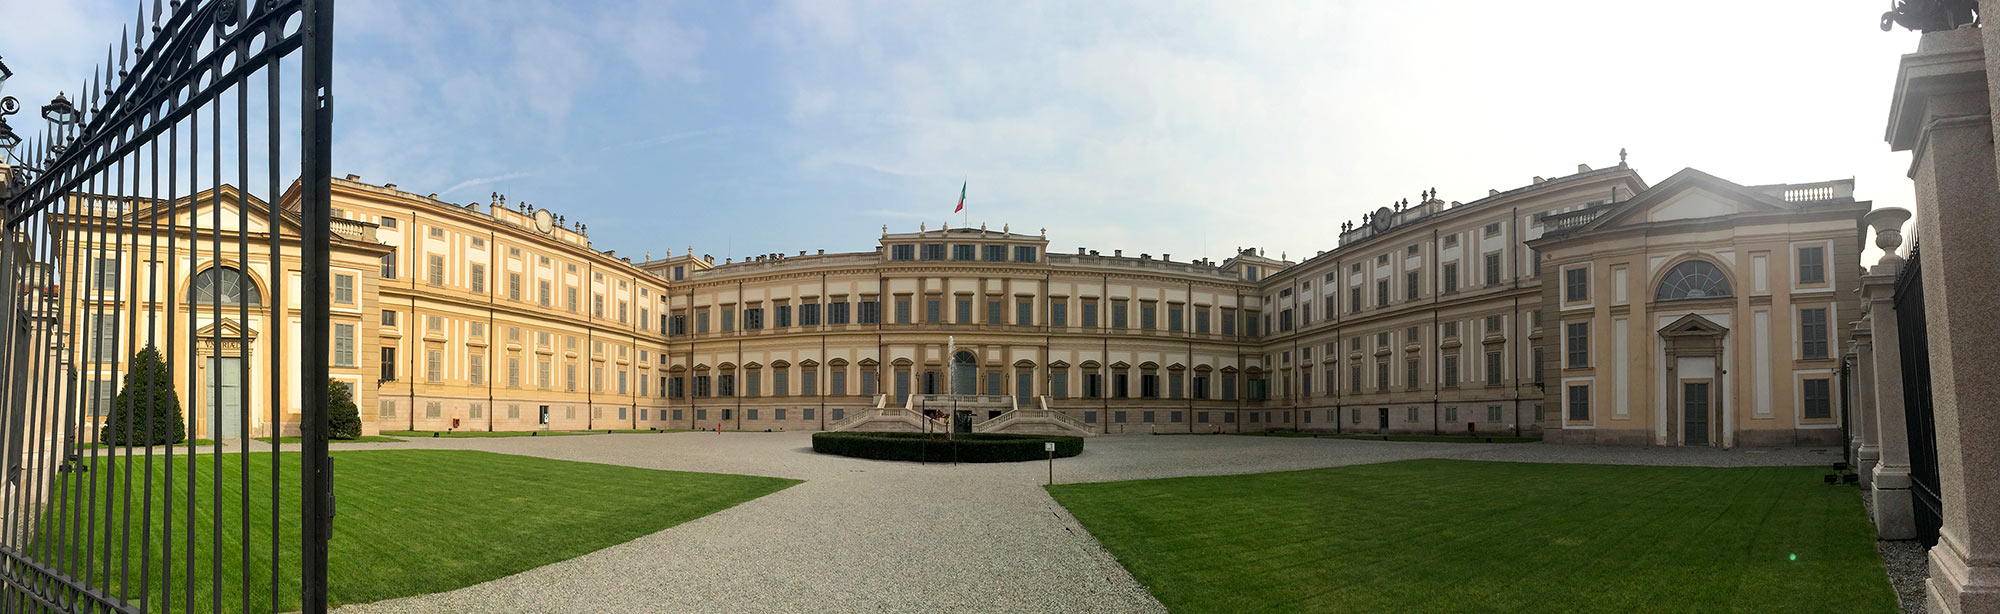 Villa reale